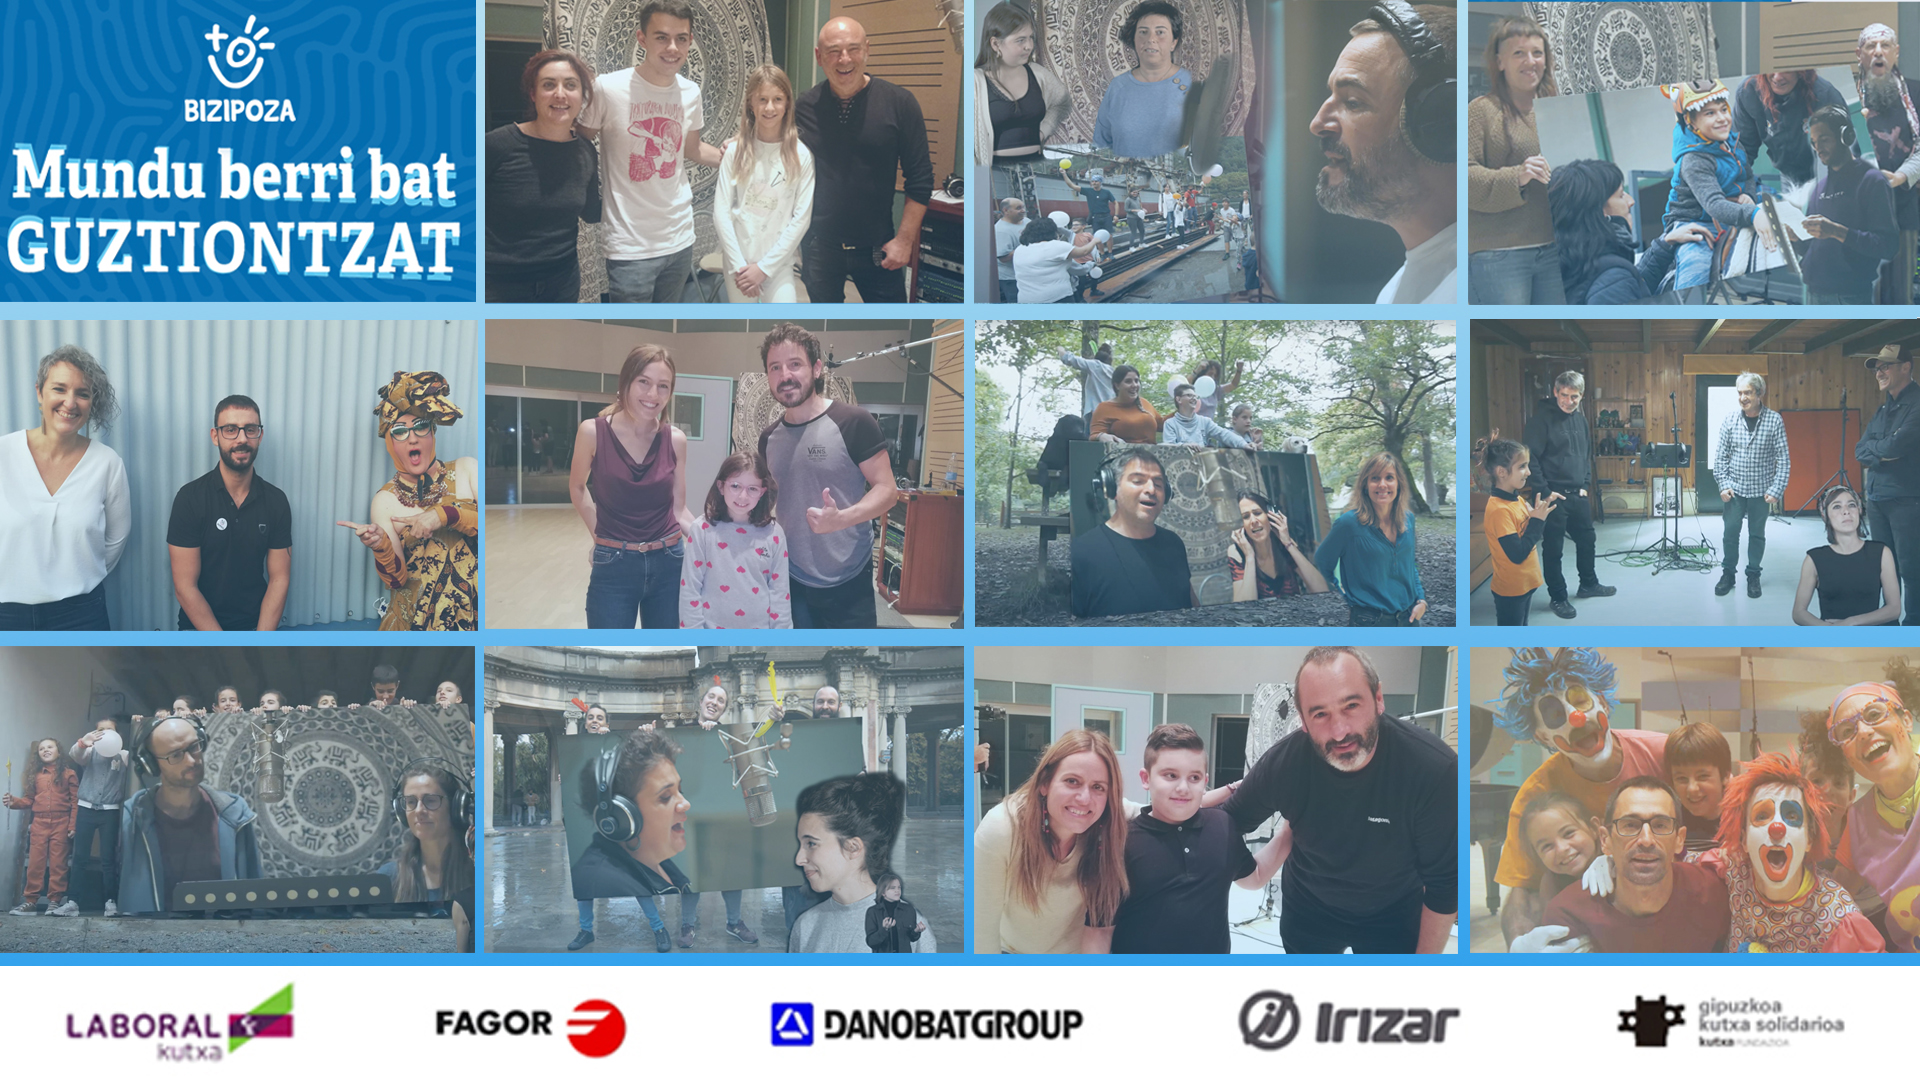 El Grupo Fagor ha colaborado con la nueva iniciativa impulsada por la asociación Bizipoza